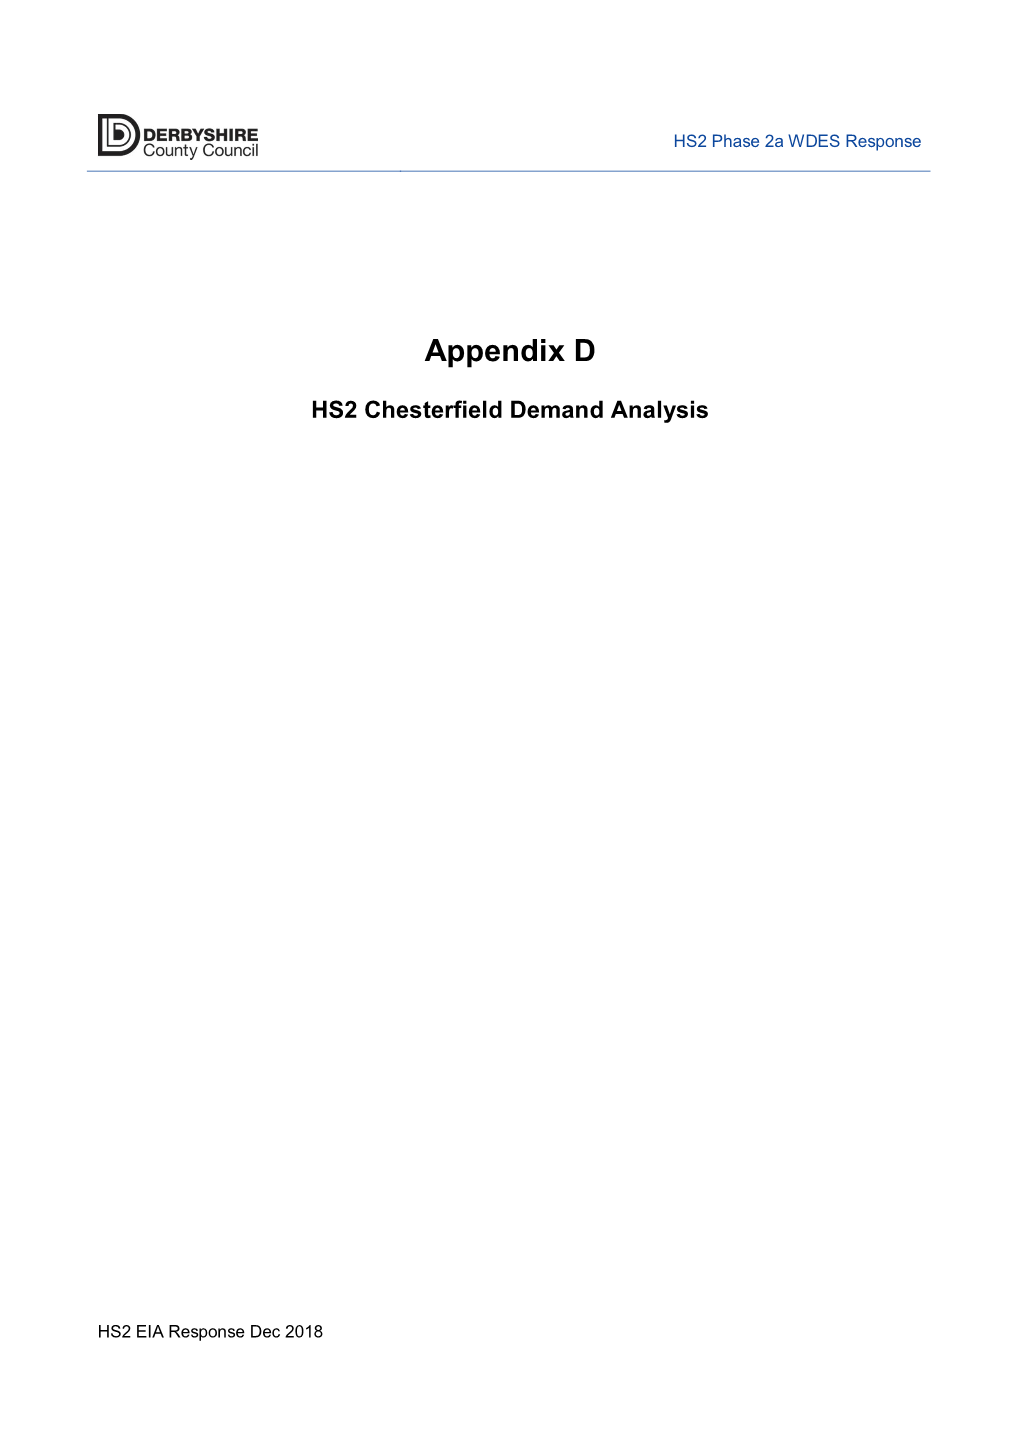 Appendix D HS2 Chesterfield Demand Analysis